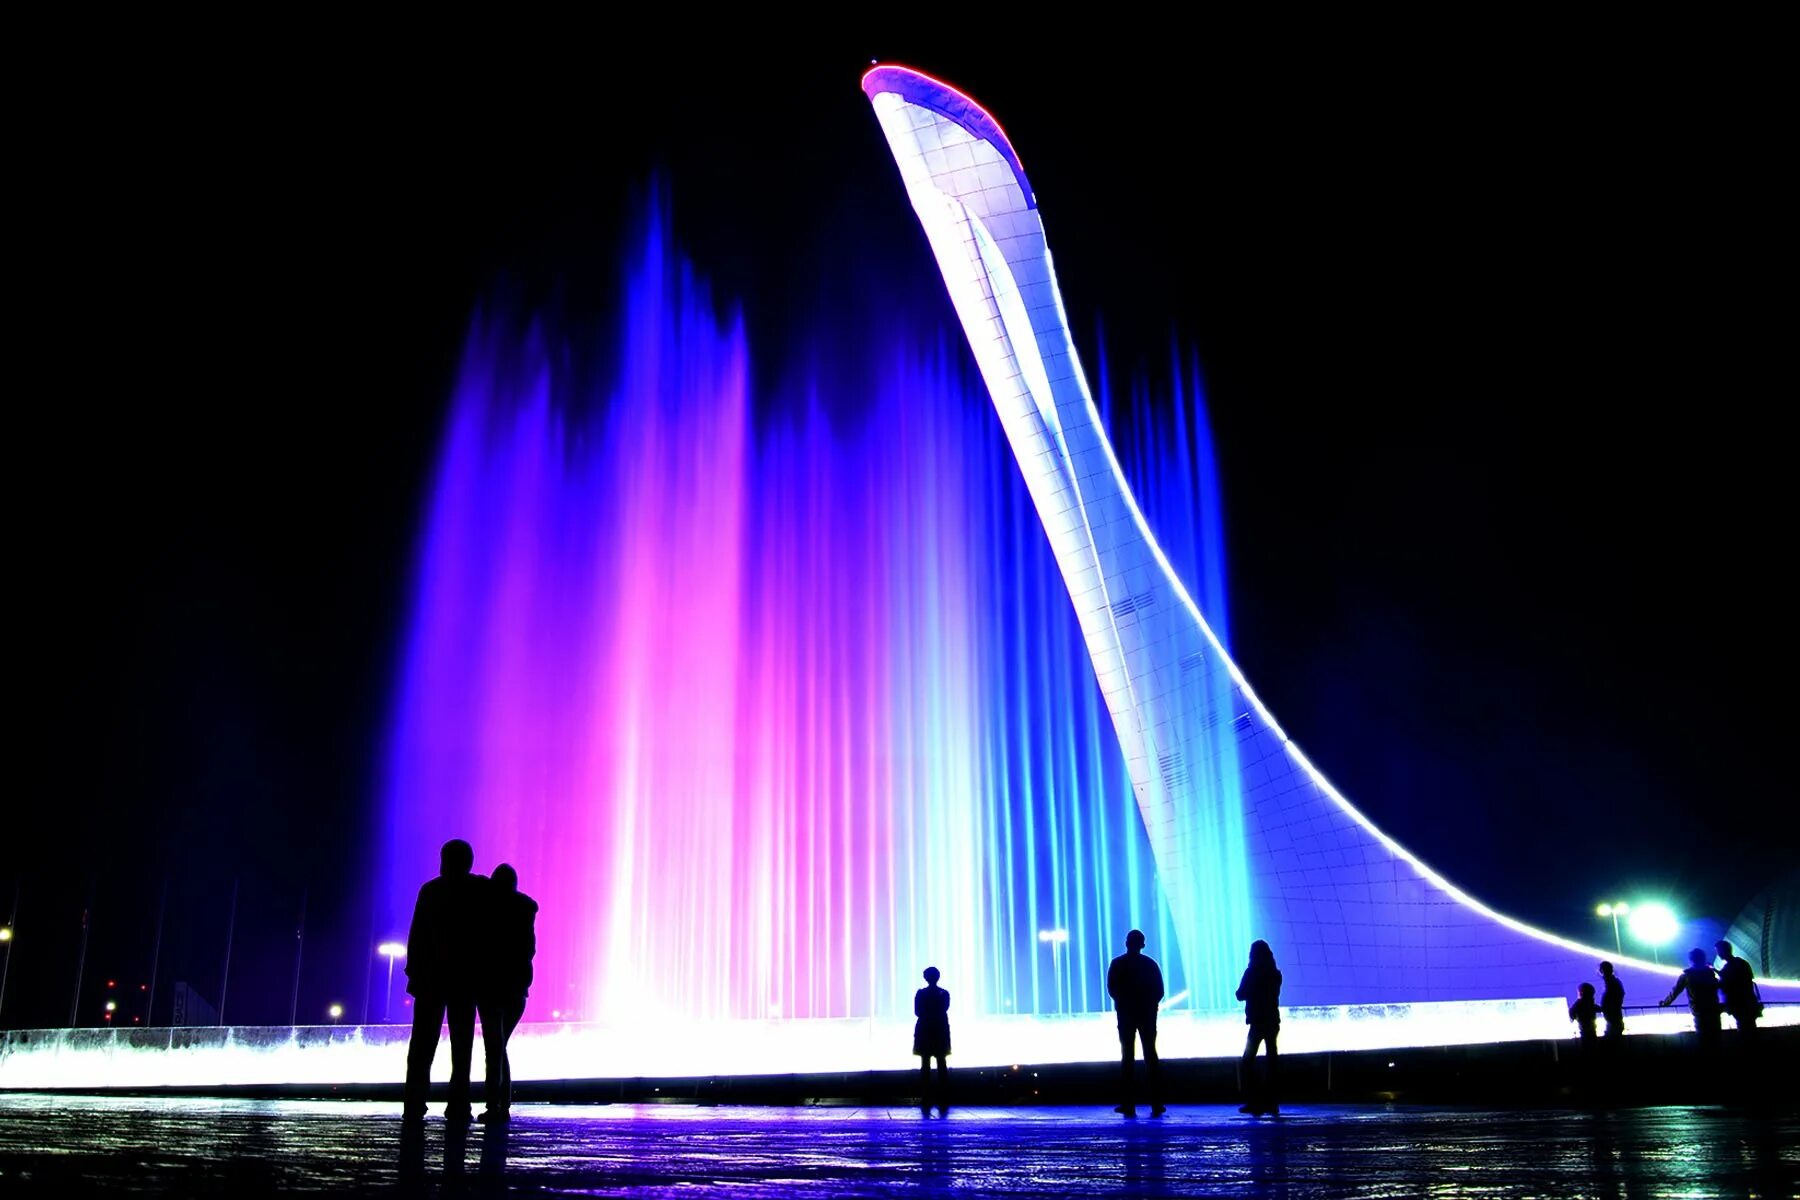 Олимпийский парк в Сочи чаша олимпийского огня. Фонтан Сочи Олимпийский парк. Поющие фонтаны Сочи Олимпийский парк. Вечерний Олимпийский парк Сочи шоу поющих фонтанов. Сочи достопримечательности и развлечения